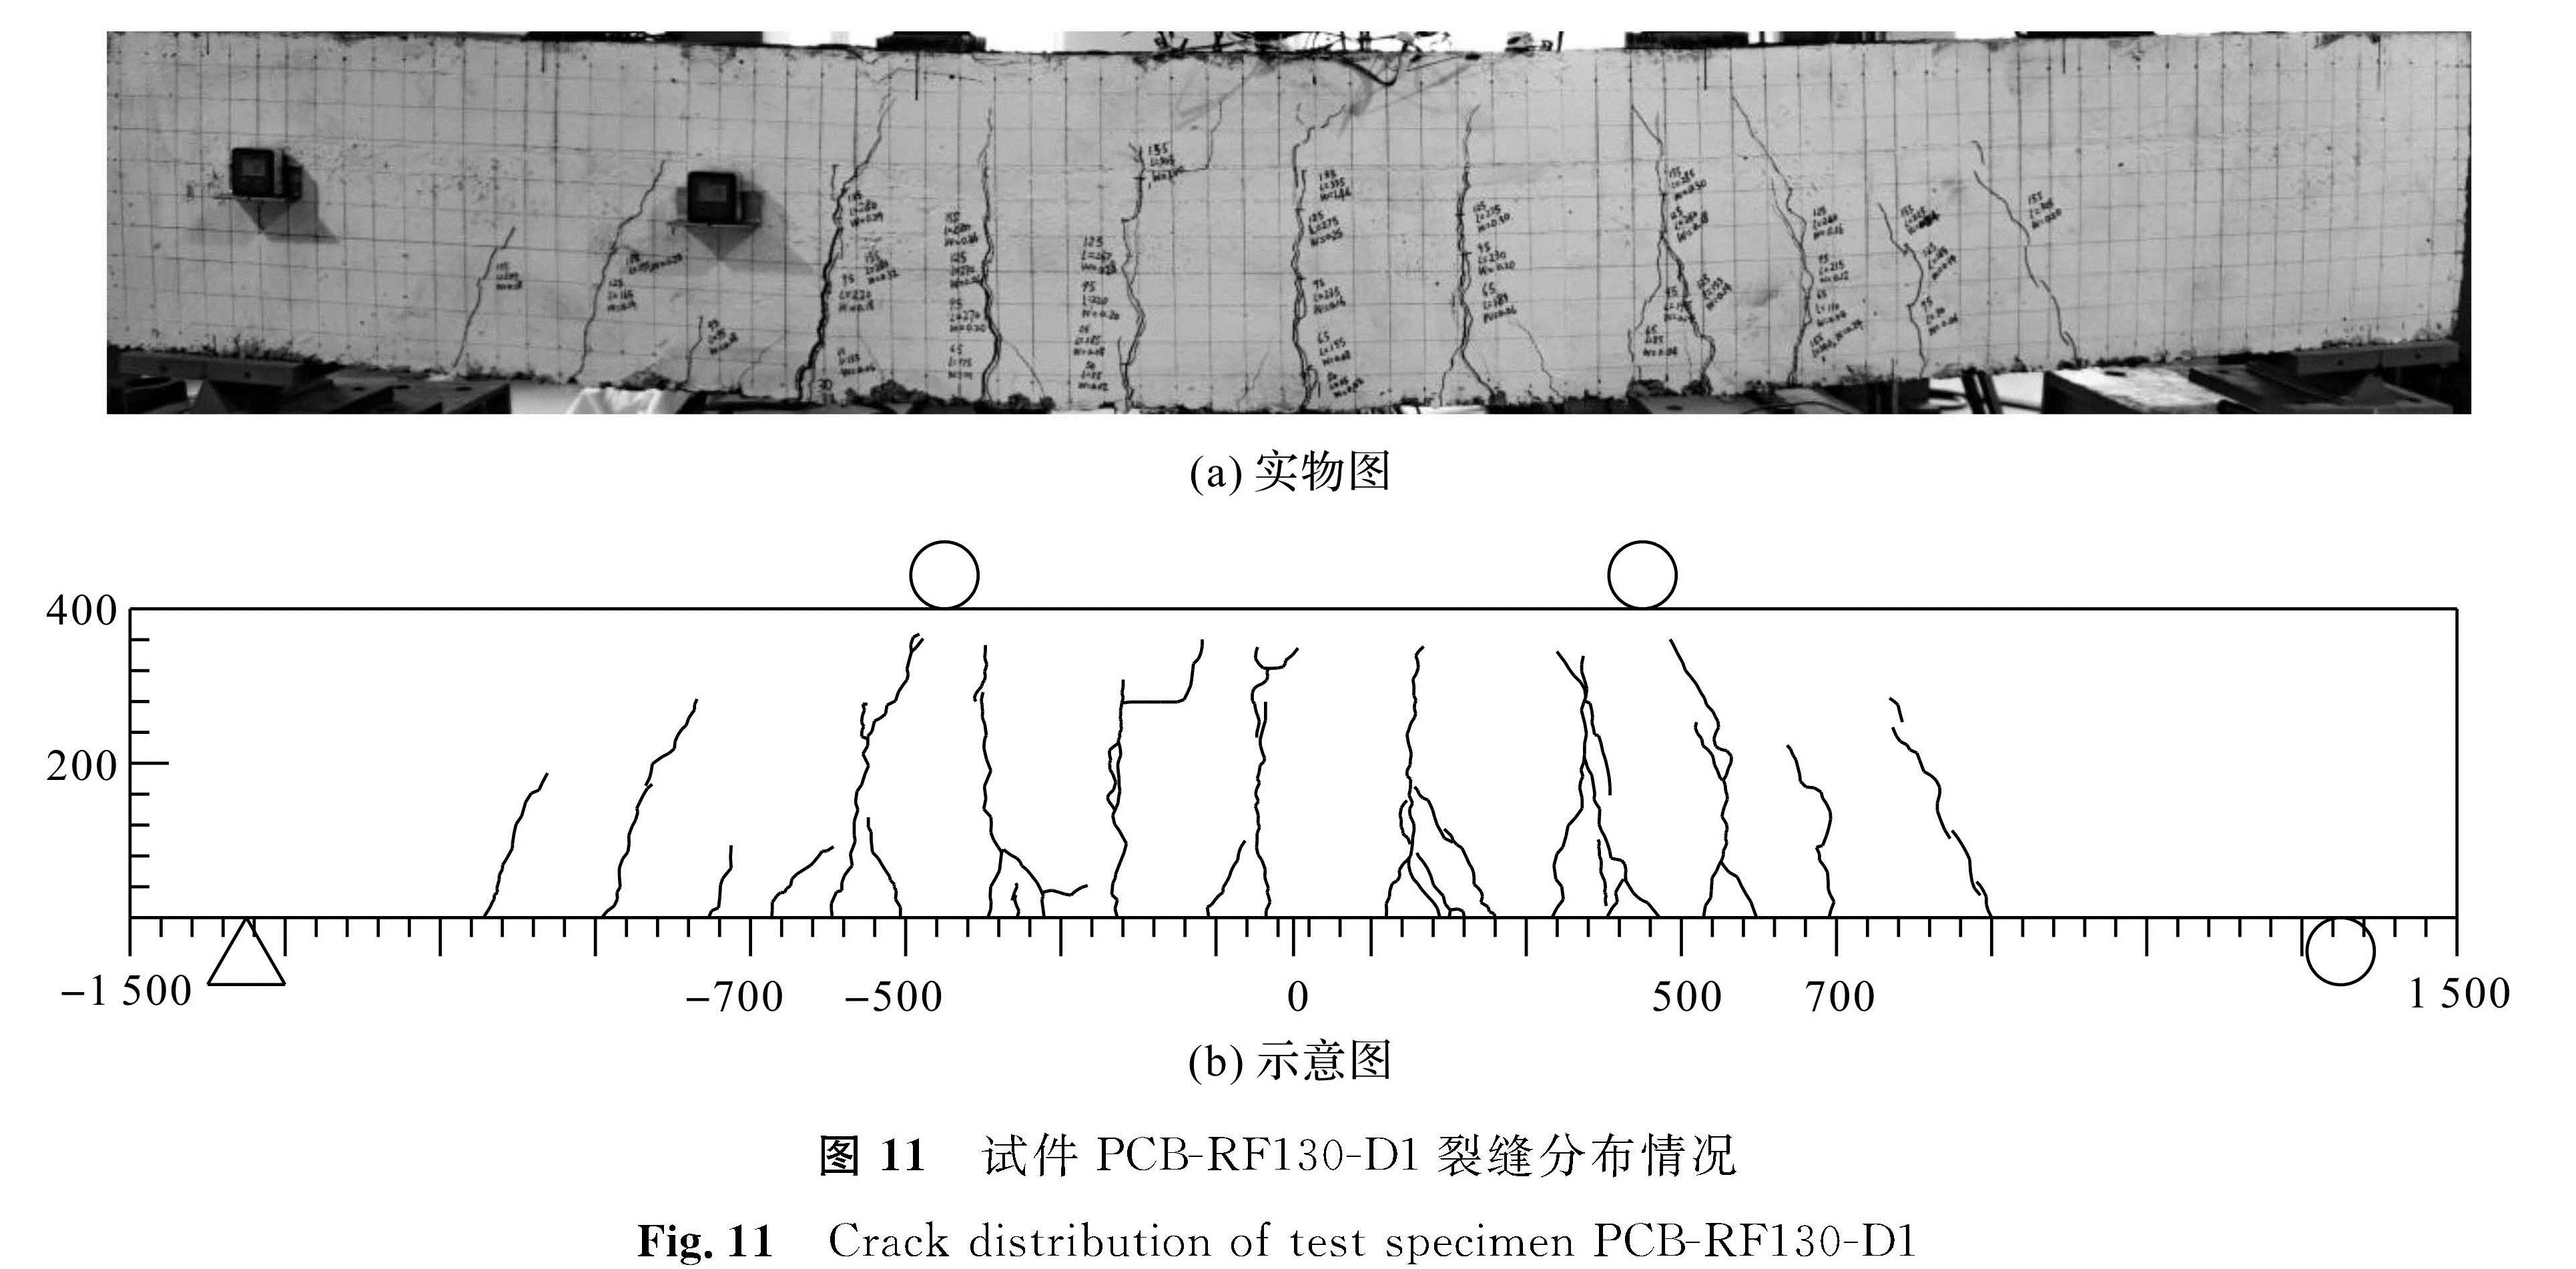 图 11 试件PCB-RF130-D1裂缝分布情况<br/>Fig.11 Crack distribution of test specimen PCB-RF130-D1